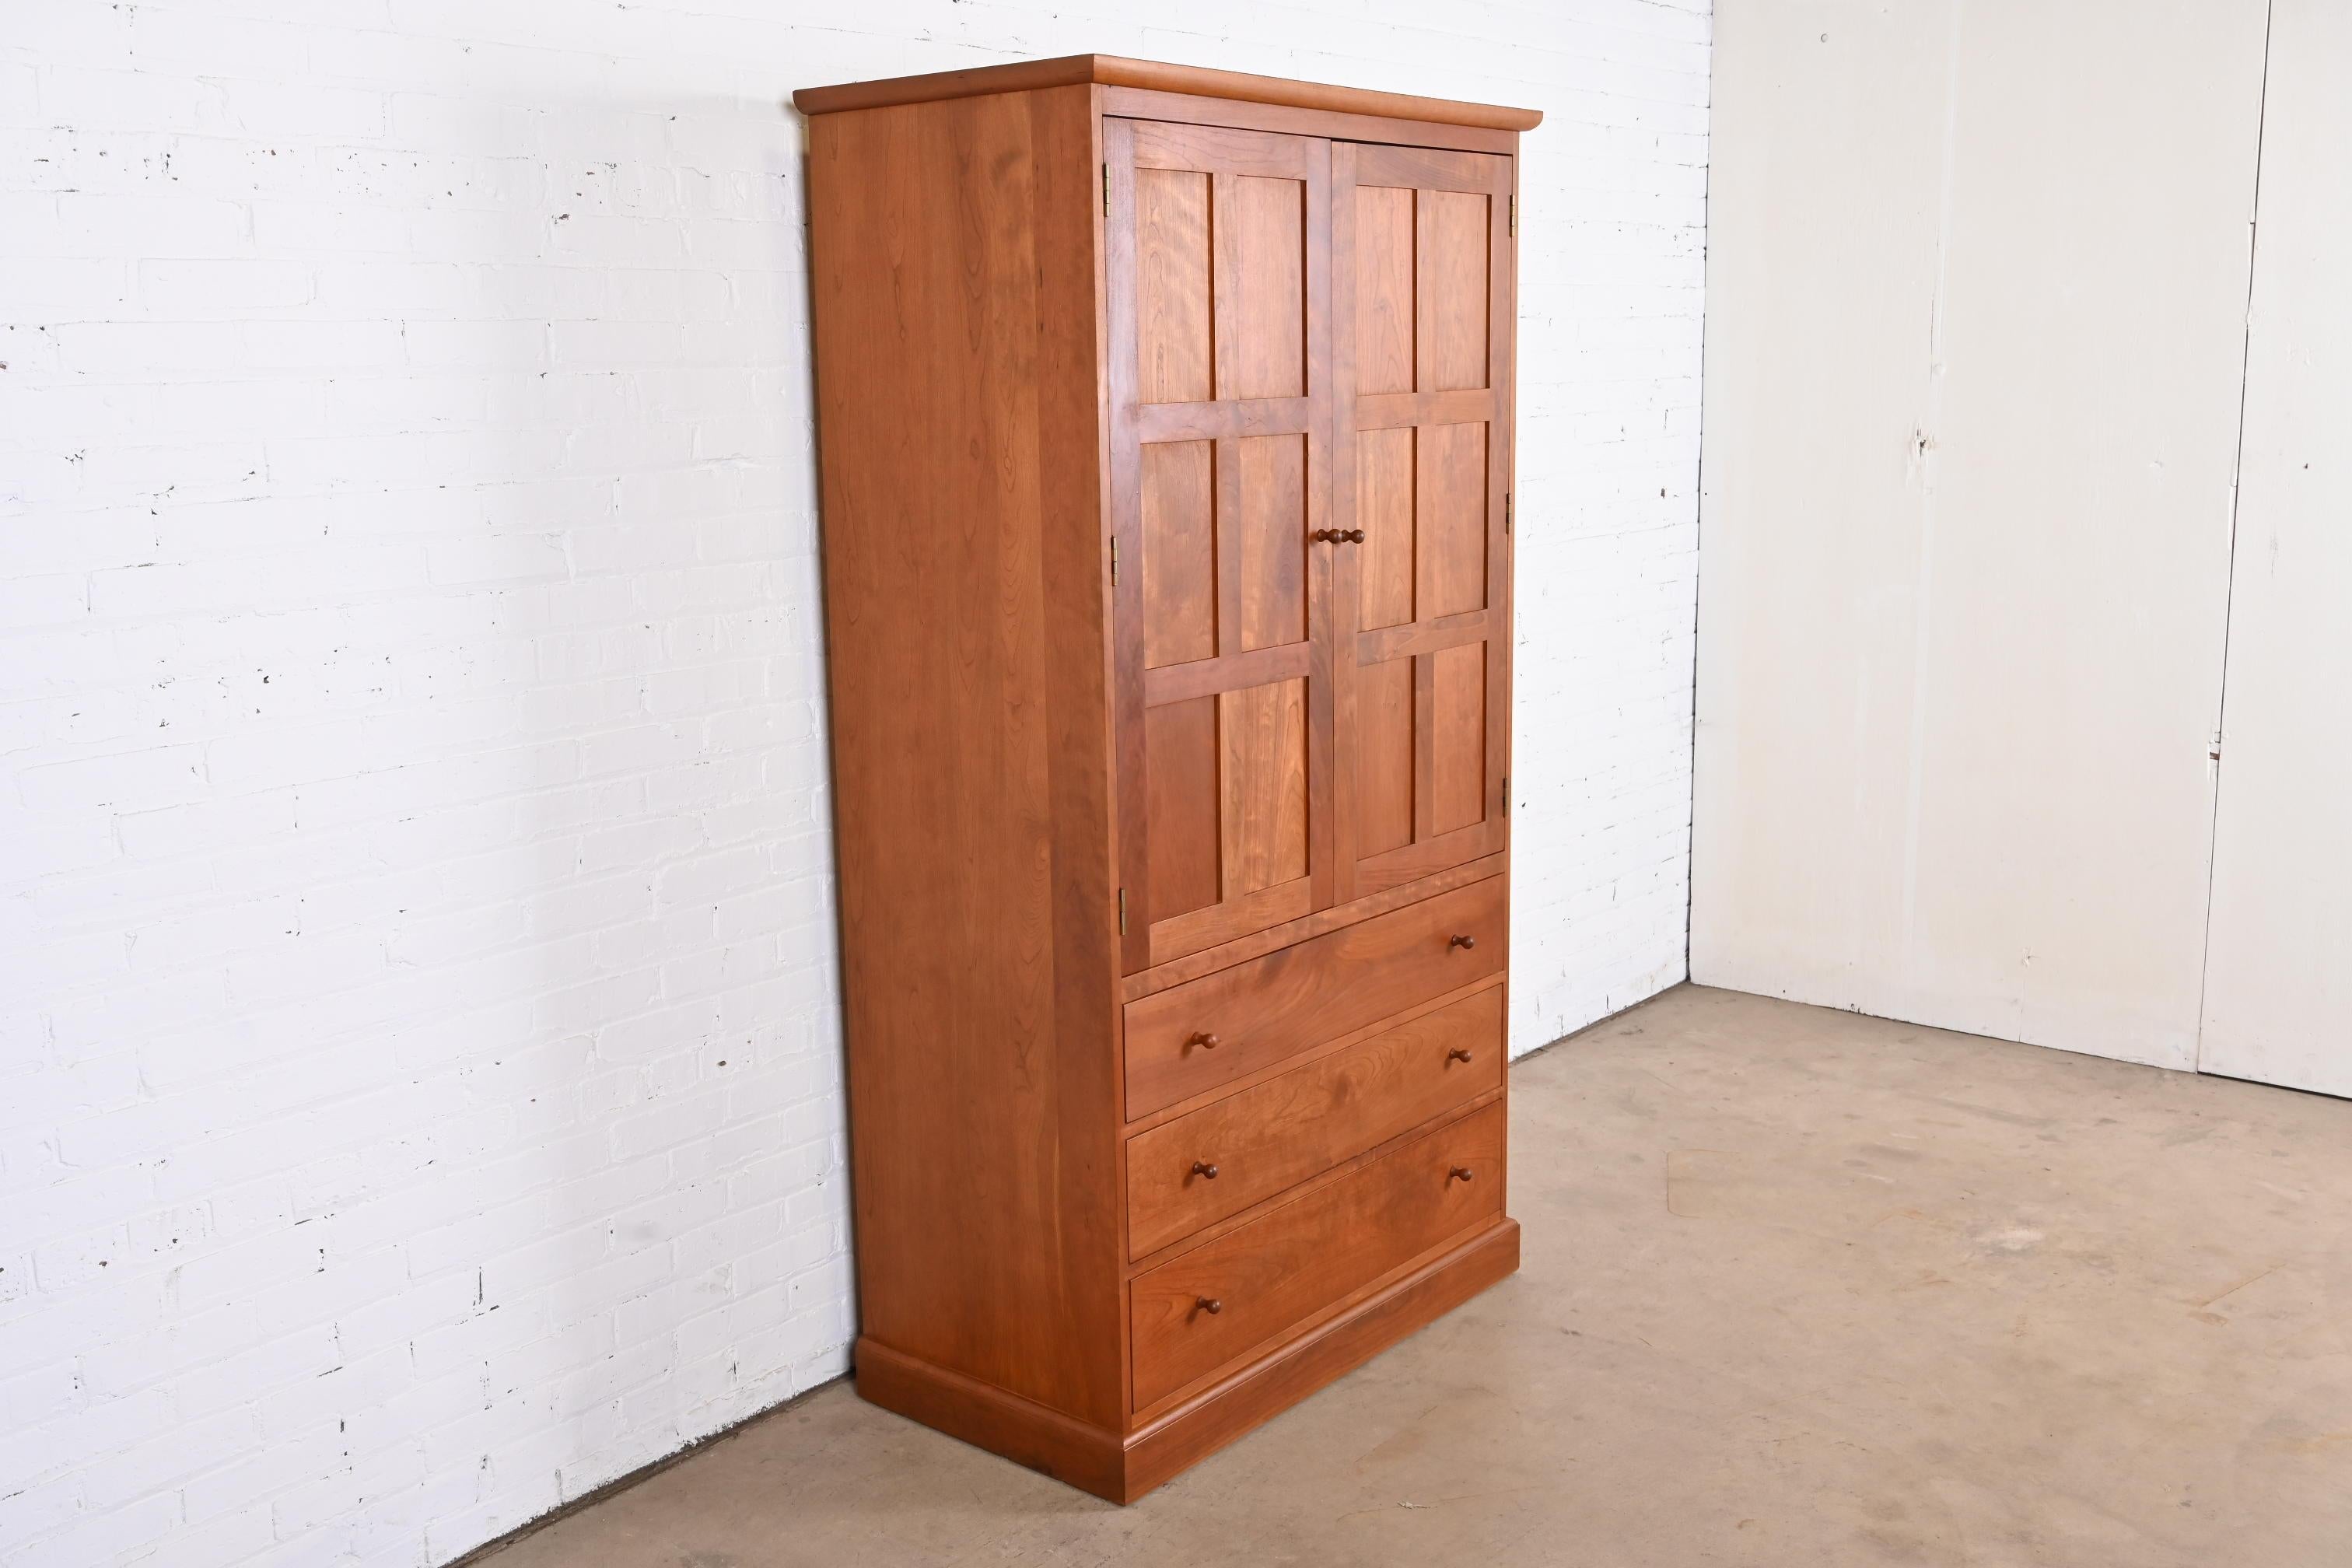 20th Century Stickley Arts & Crafts Cherry Wood Armoire Dresser